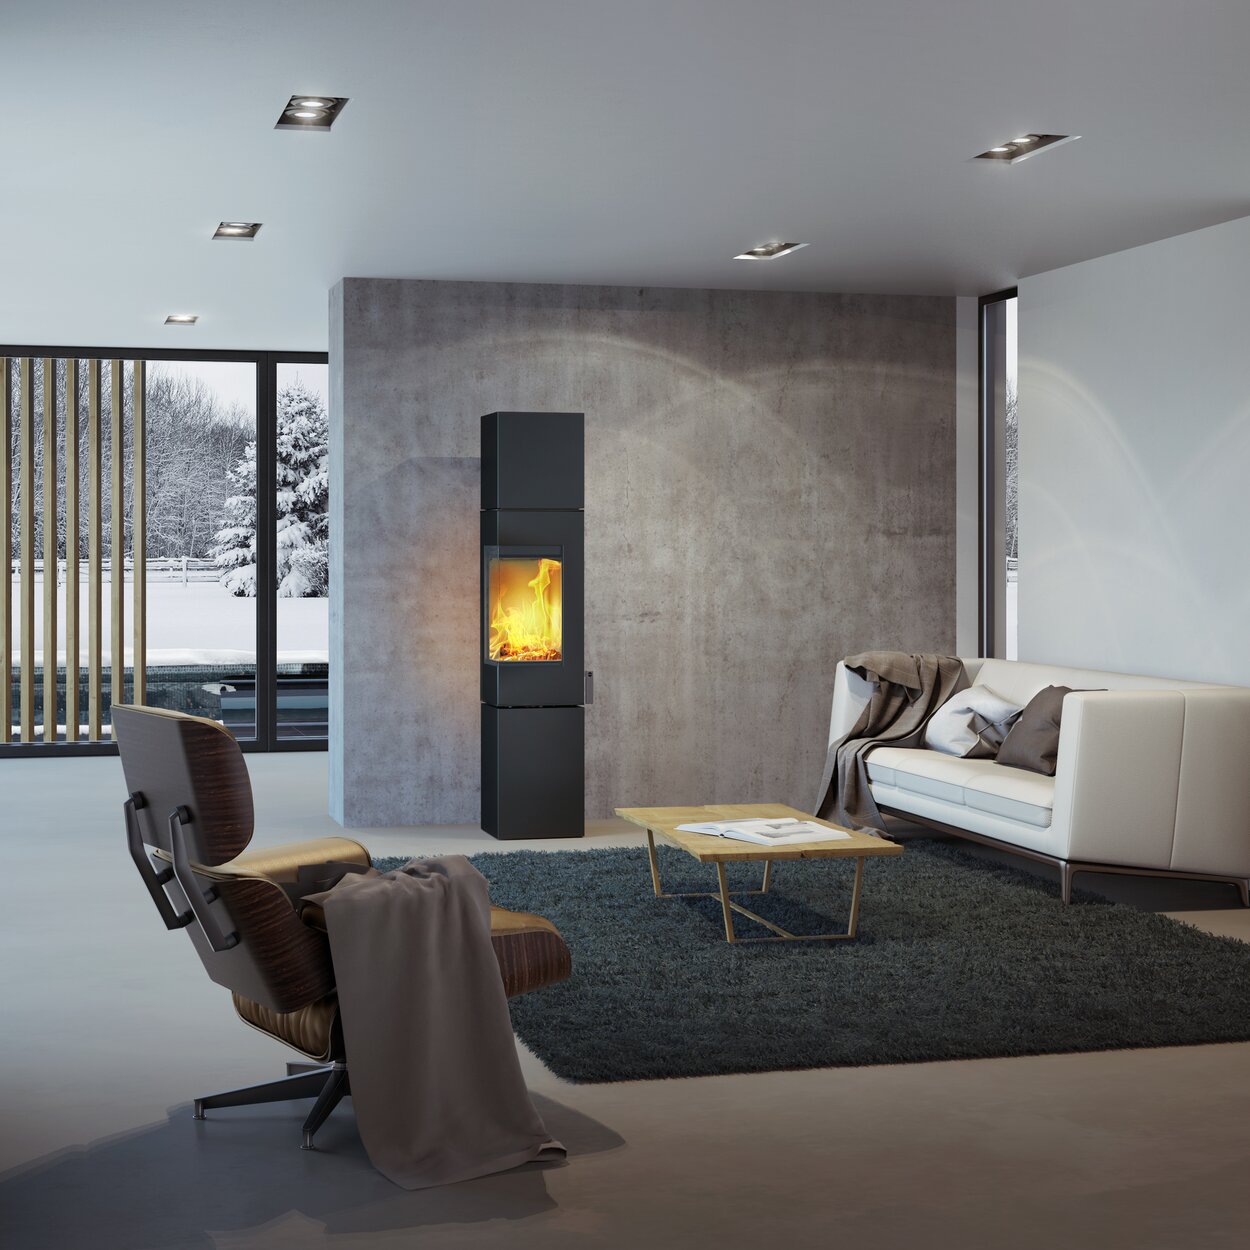 Holz-Kaminofen Q-BE XL in Schwarz mit Stahltür in modernem Wohnraum umgeben von einer schönen Schneelandschaft